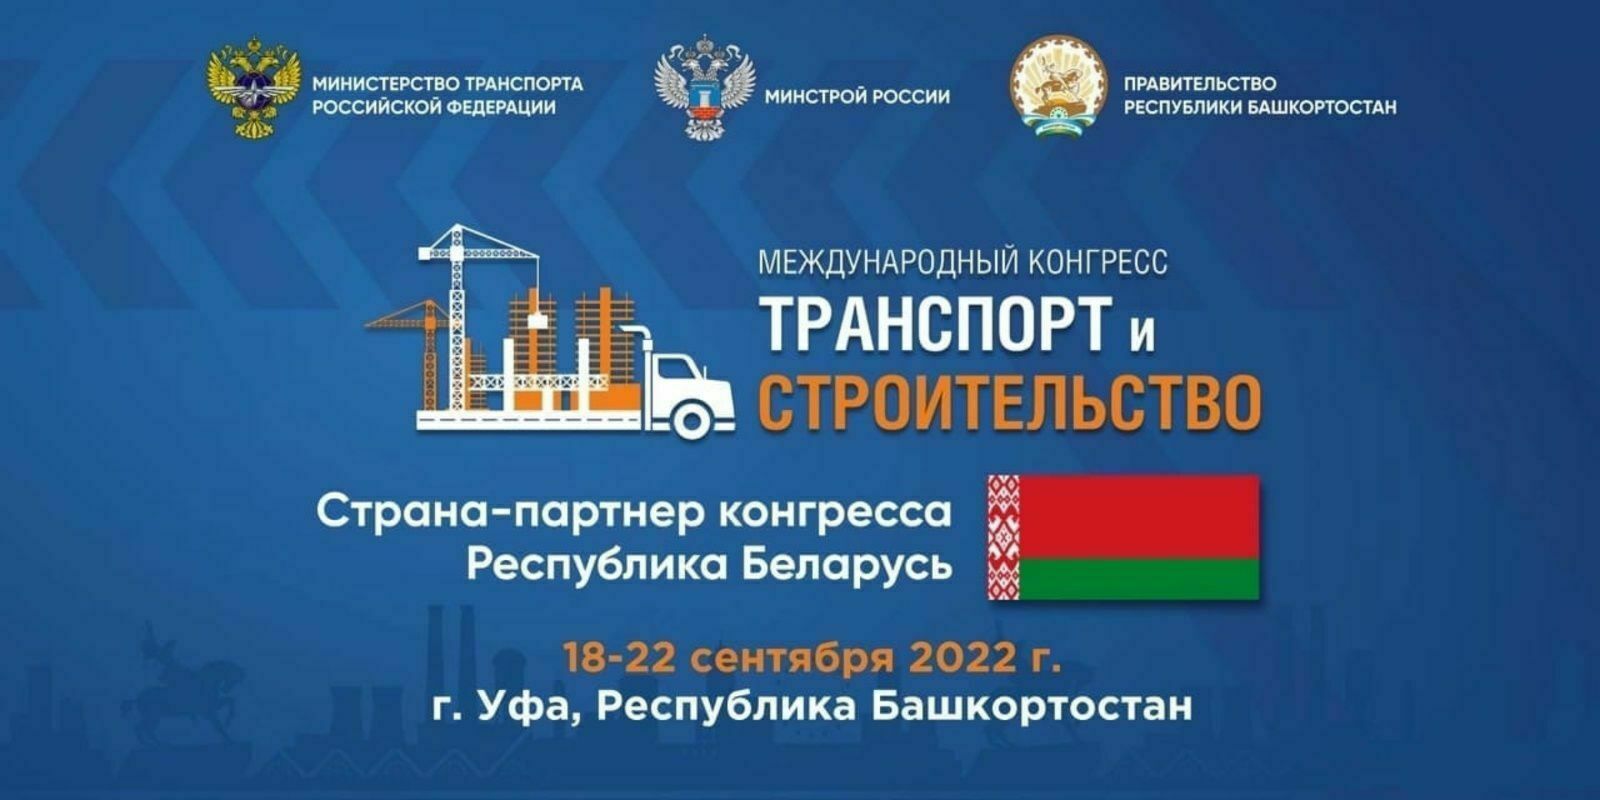 На Международном конгрессе «Транспорт и строительство» пройдет саммит крупнейших застройщиков России